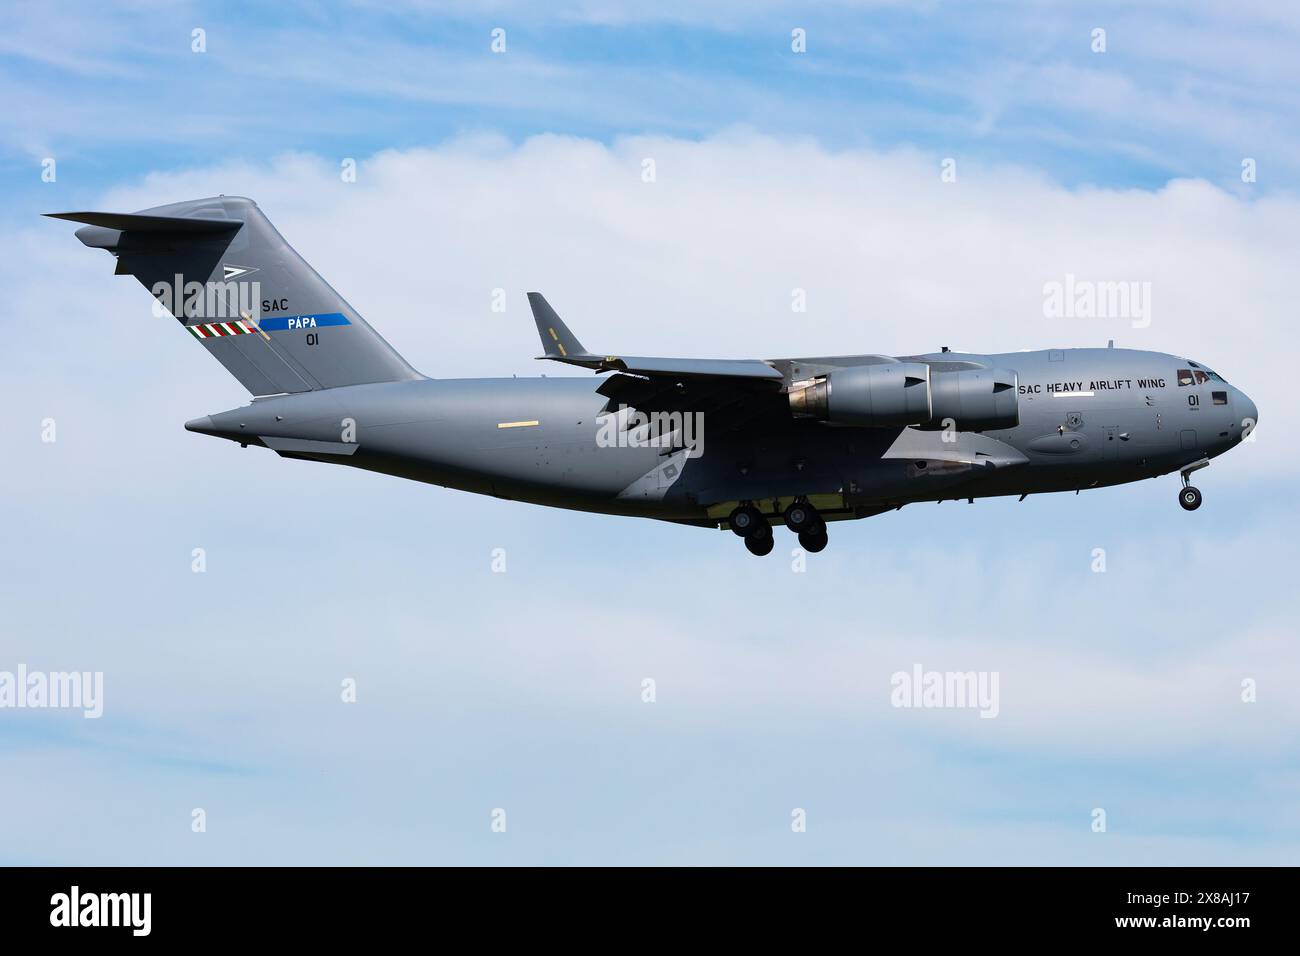 Papa, Ungheria - 10 maggio 2021: Boeing C-17 Globemaster III aereo da trasporto militare alla base aerea. Volo dell'aeronautica. Aviazione e aerei. Sollevamento pneumatico. Vola Foto Stock